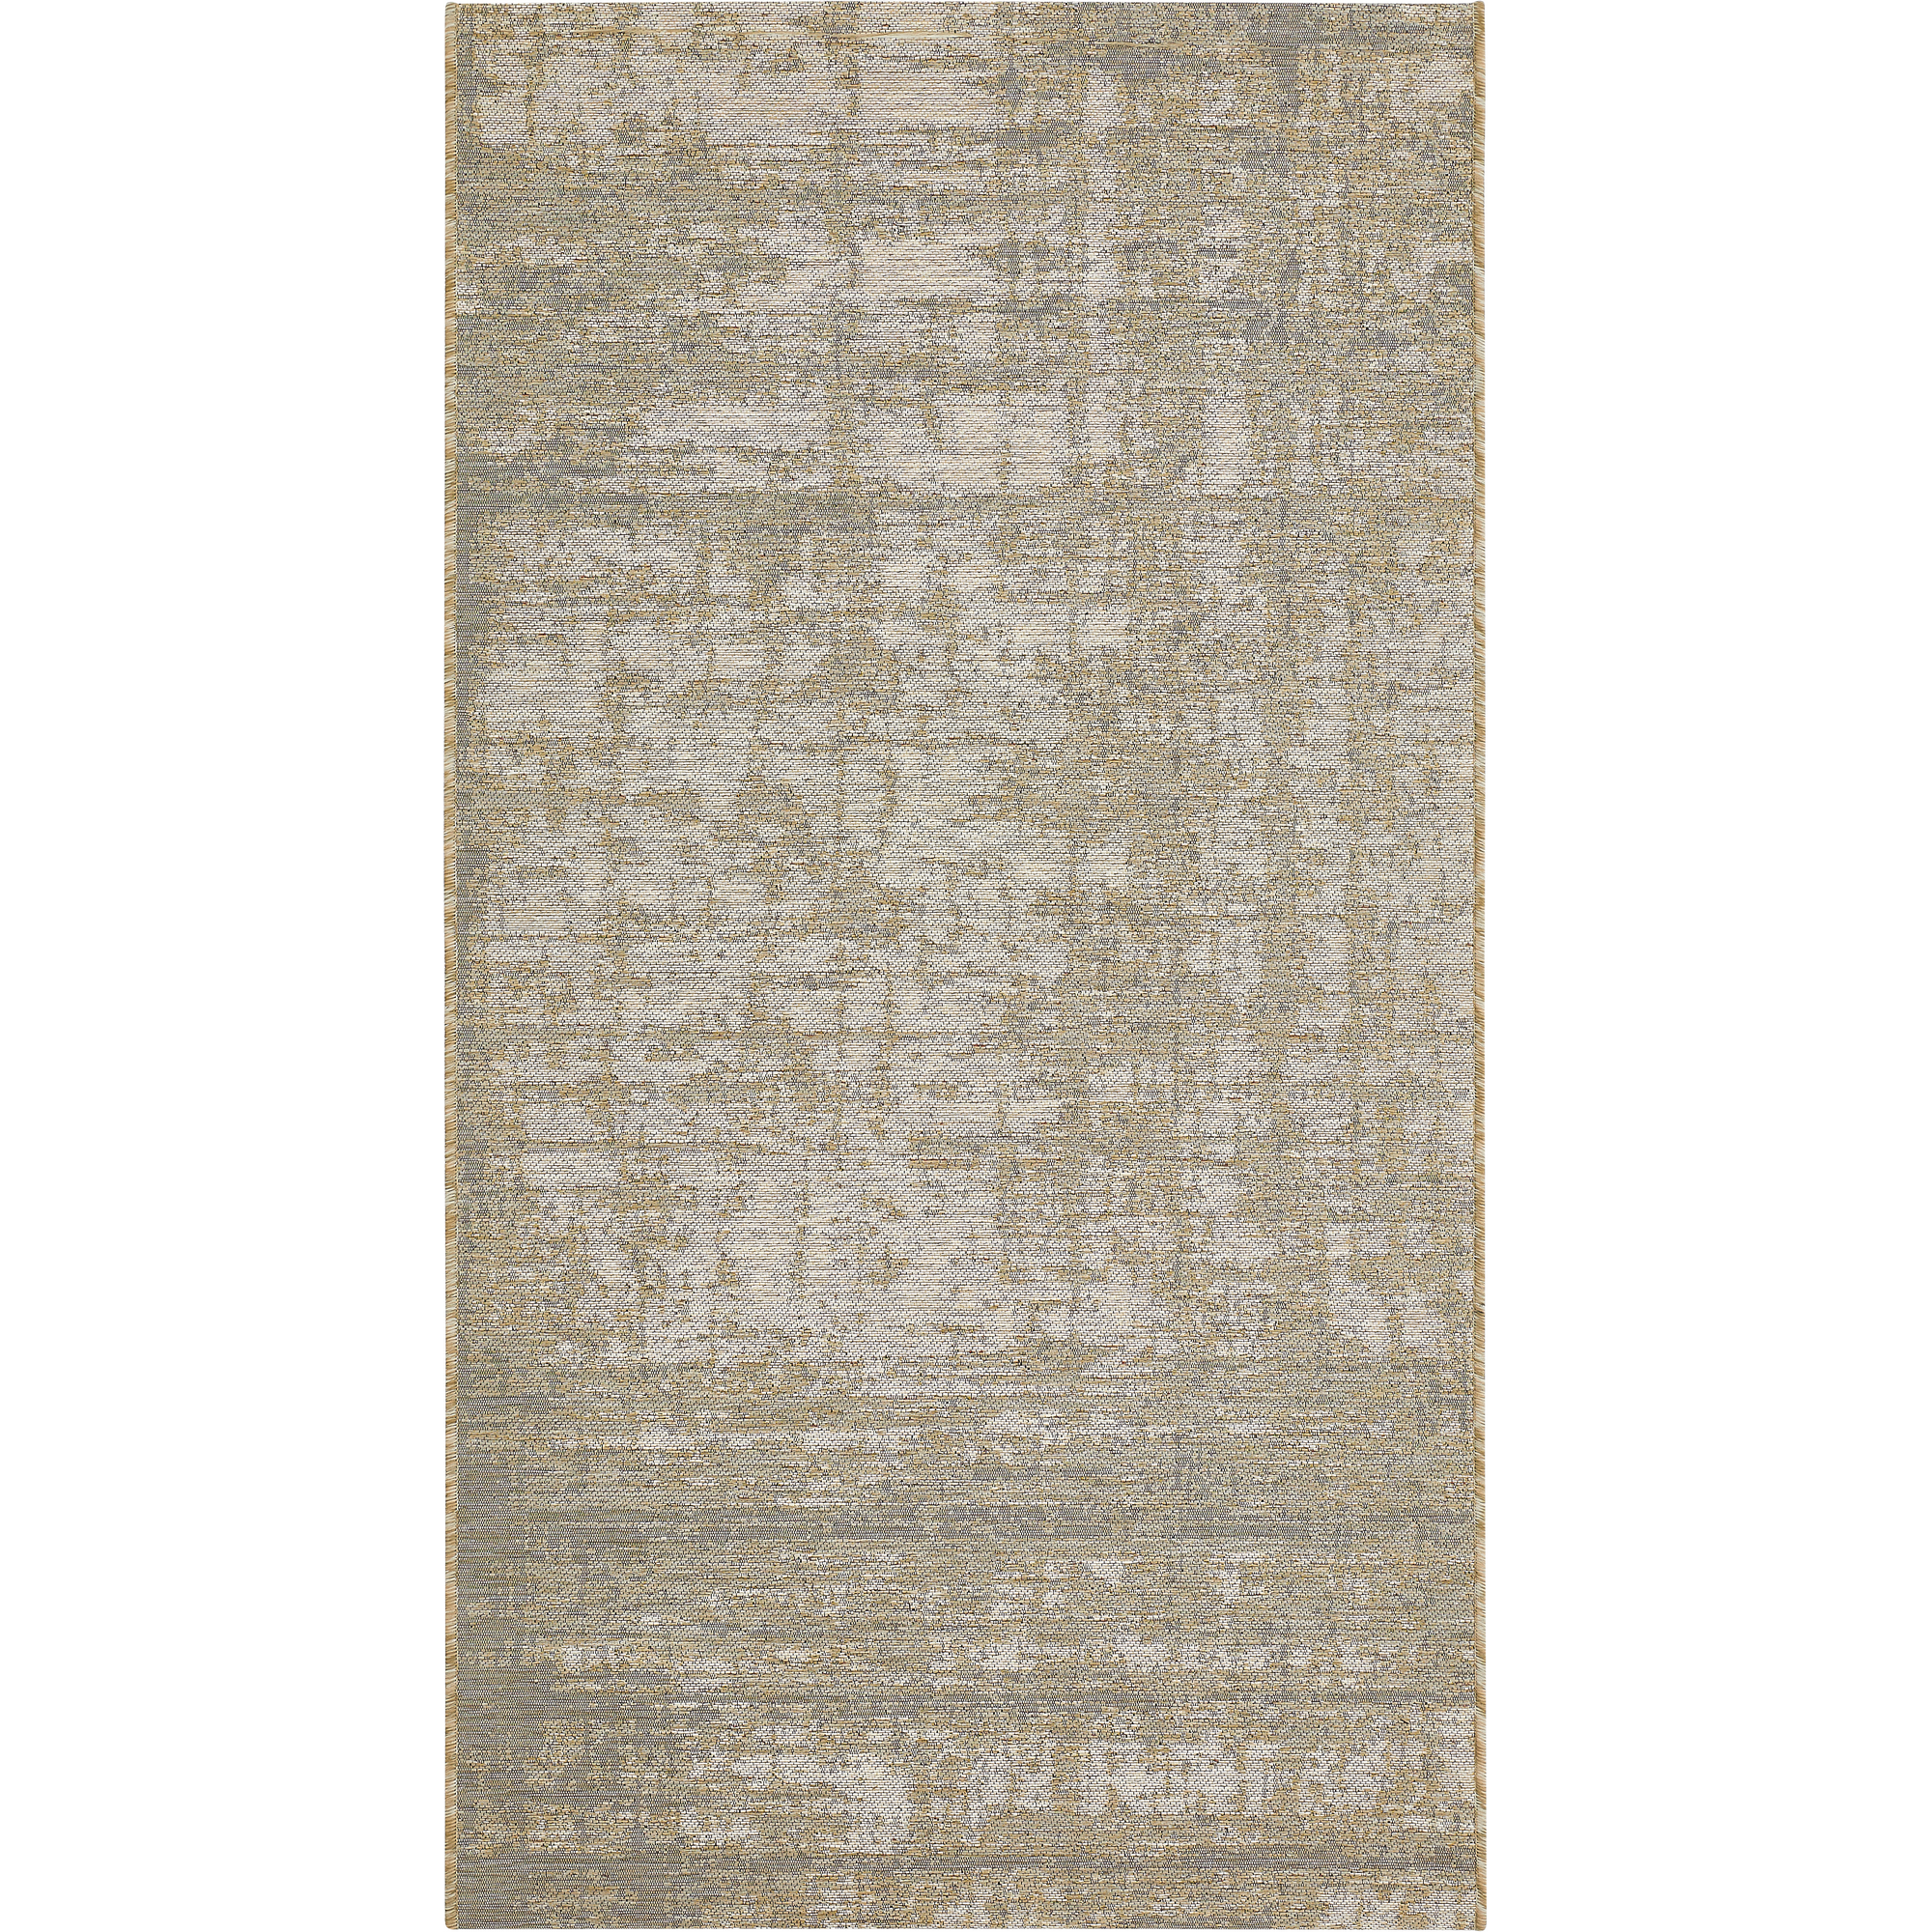 Teppich 'Pablo' beige/grau 80 x 150 cm + product picture